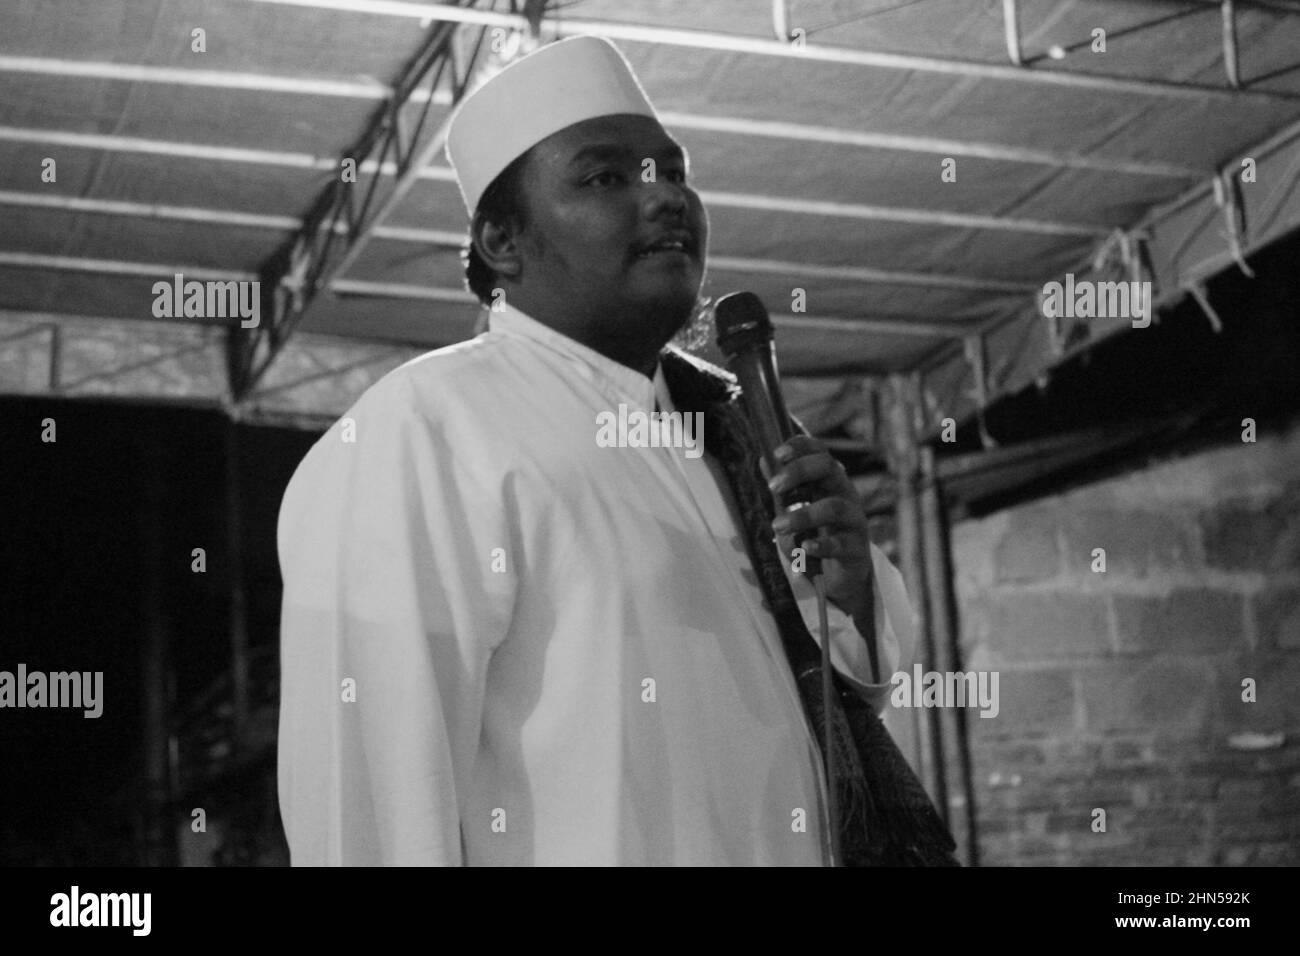 Jakarta, Indonesien - 11 19 2020: Ein Mann, der in islamischer Kleidung steht, spricht während der Feier des ISR des Propheten Muhammad durch ein Mikrofon Stockfoto